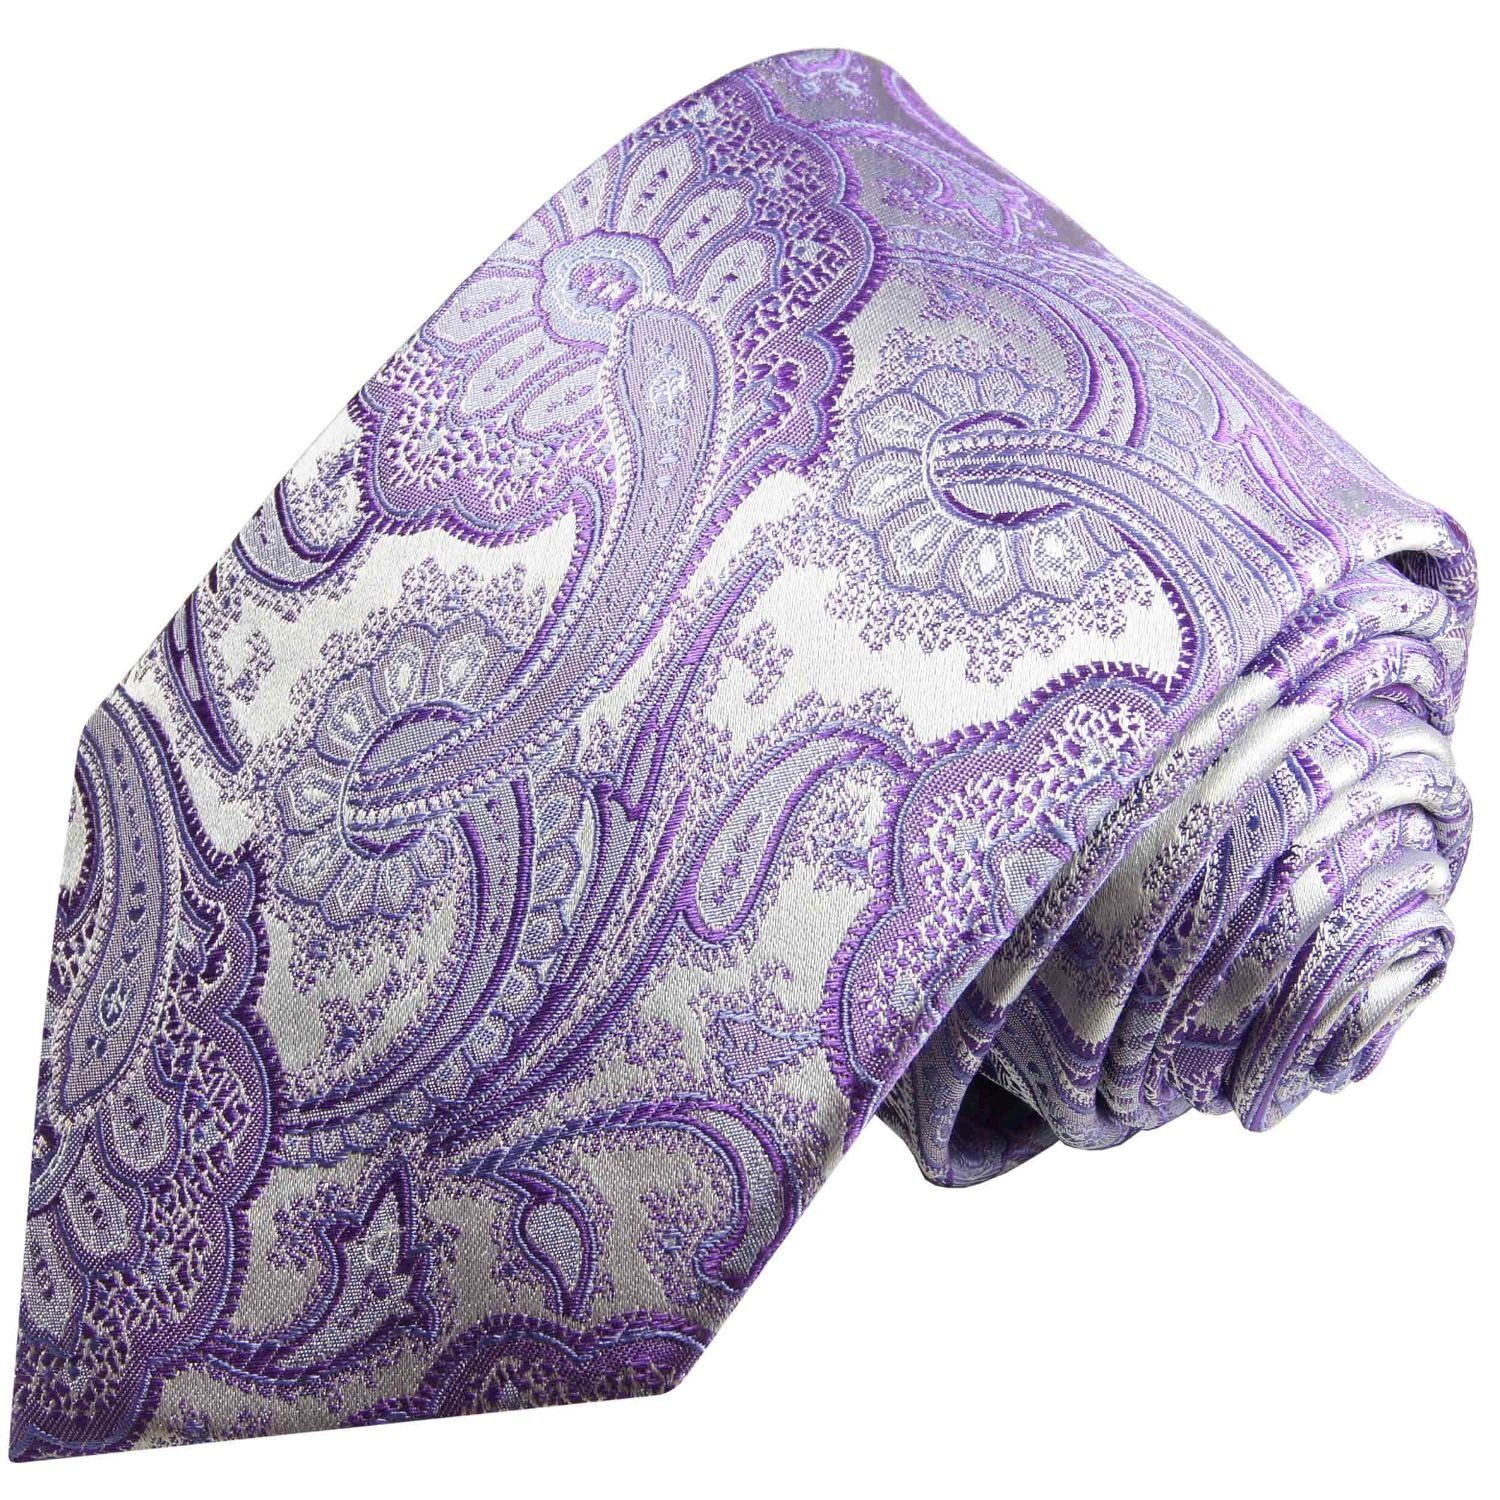 Paul Malone Krawatte Elegante Seidenkrawatte Herren Schlips paisley brokat  100% Seide Schmal (6cm), lila flieder silber 372